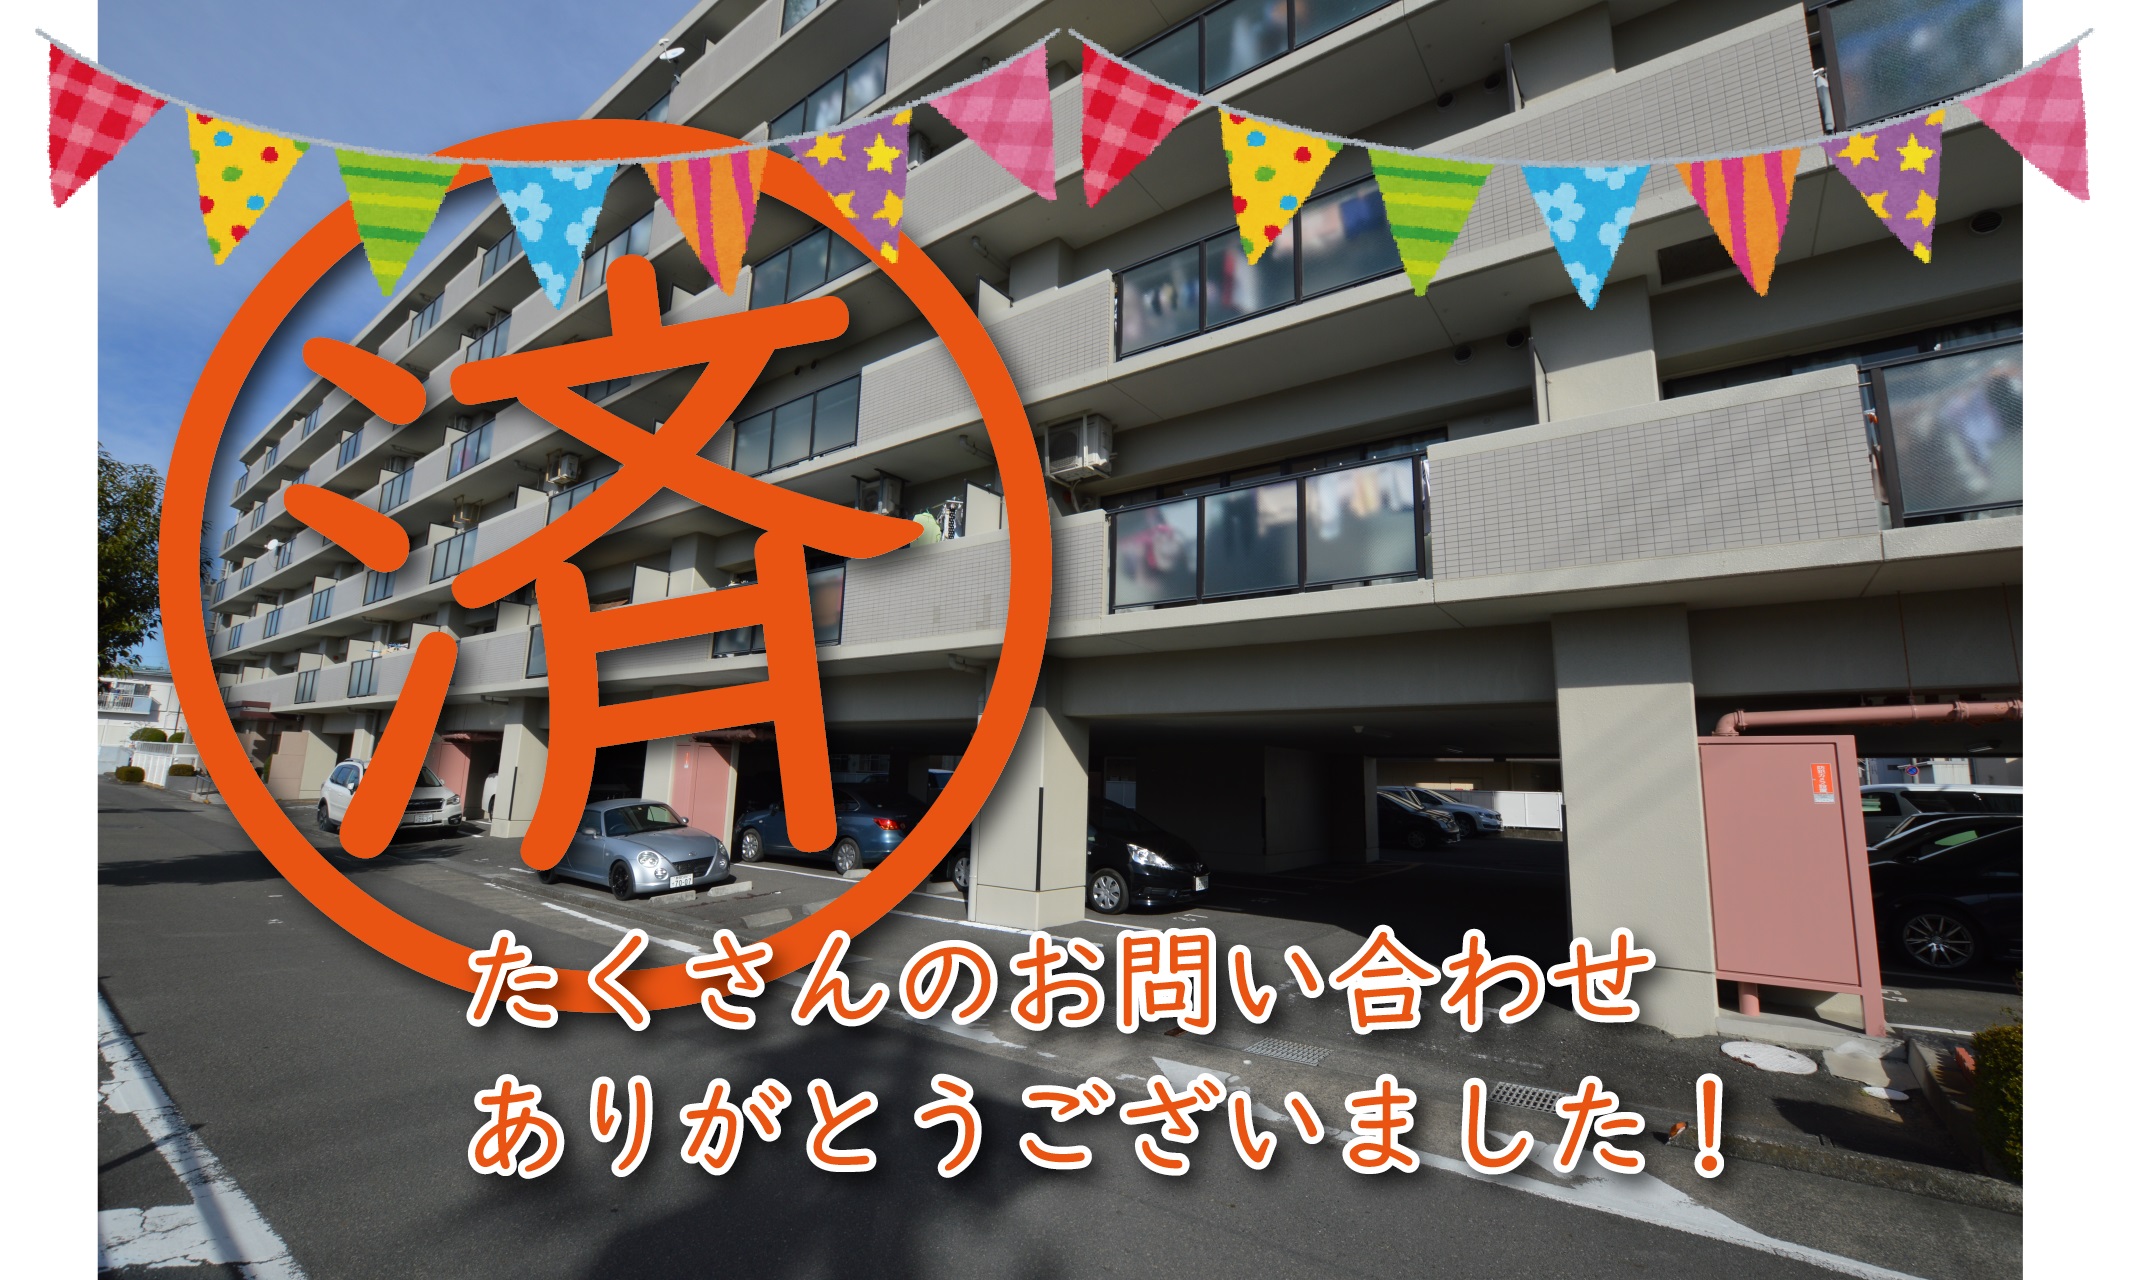 【成約】静岡市駿河区〈マンション〉が成約しました